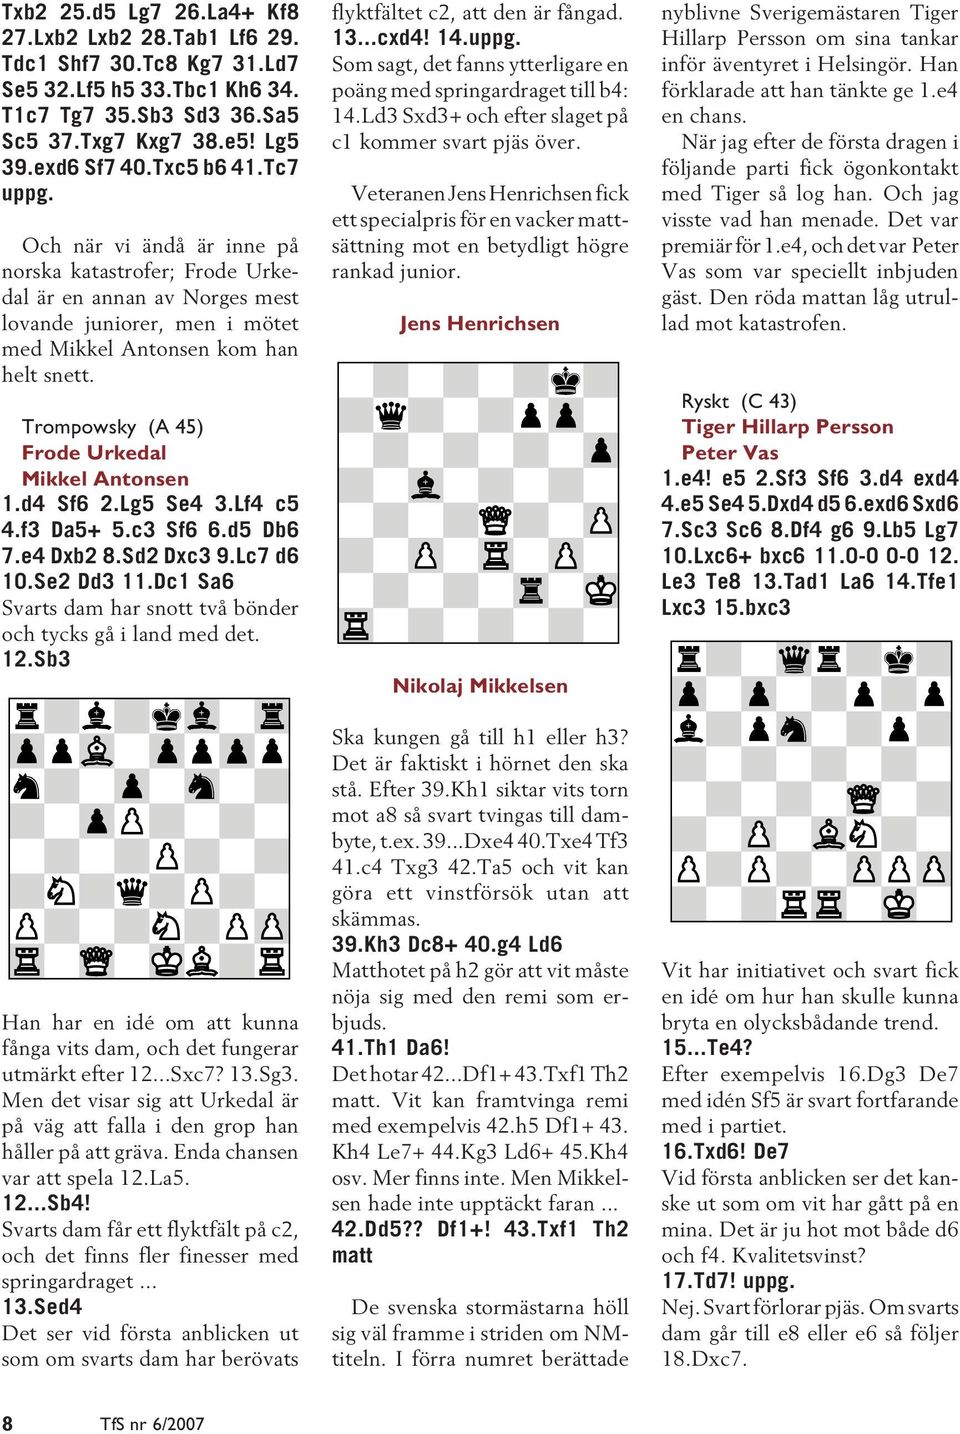 Trompowsky (A 45) Frode Urkedal Mikkel Antonsen 1.d4 Sf6 2.Lg5 Se4 3.Lf4 c5 4.f3 Da5+ 5.c3 Sf6 6.d5 Db6 7.e4 Dxb2 8.Sd2 Dxc3 9.Lc7 d6 10.Se2 Dd3 11.